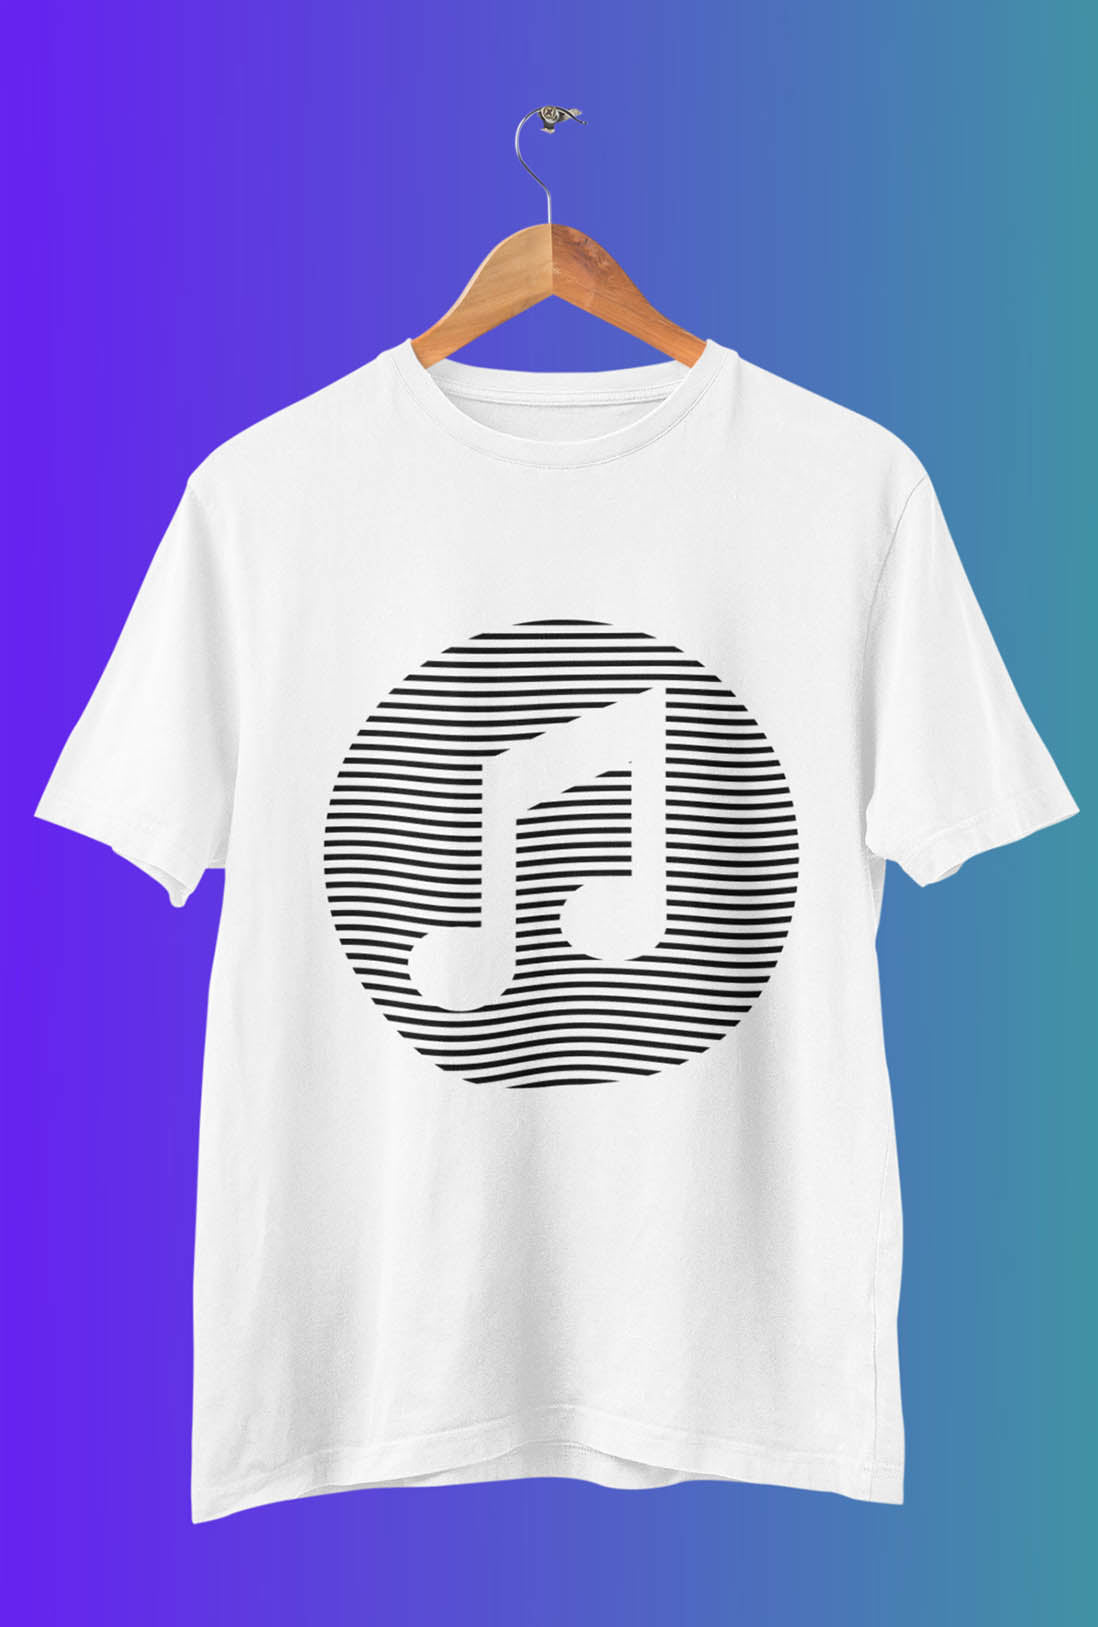 Music Men's Cotton T-Shirts